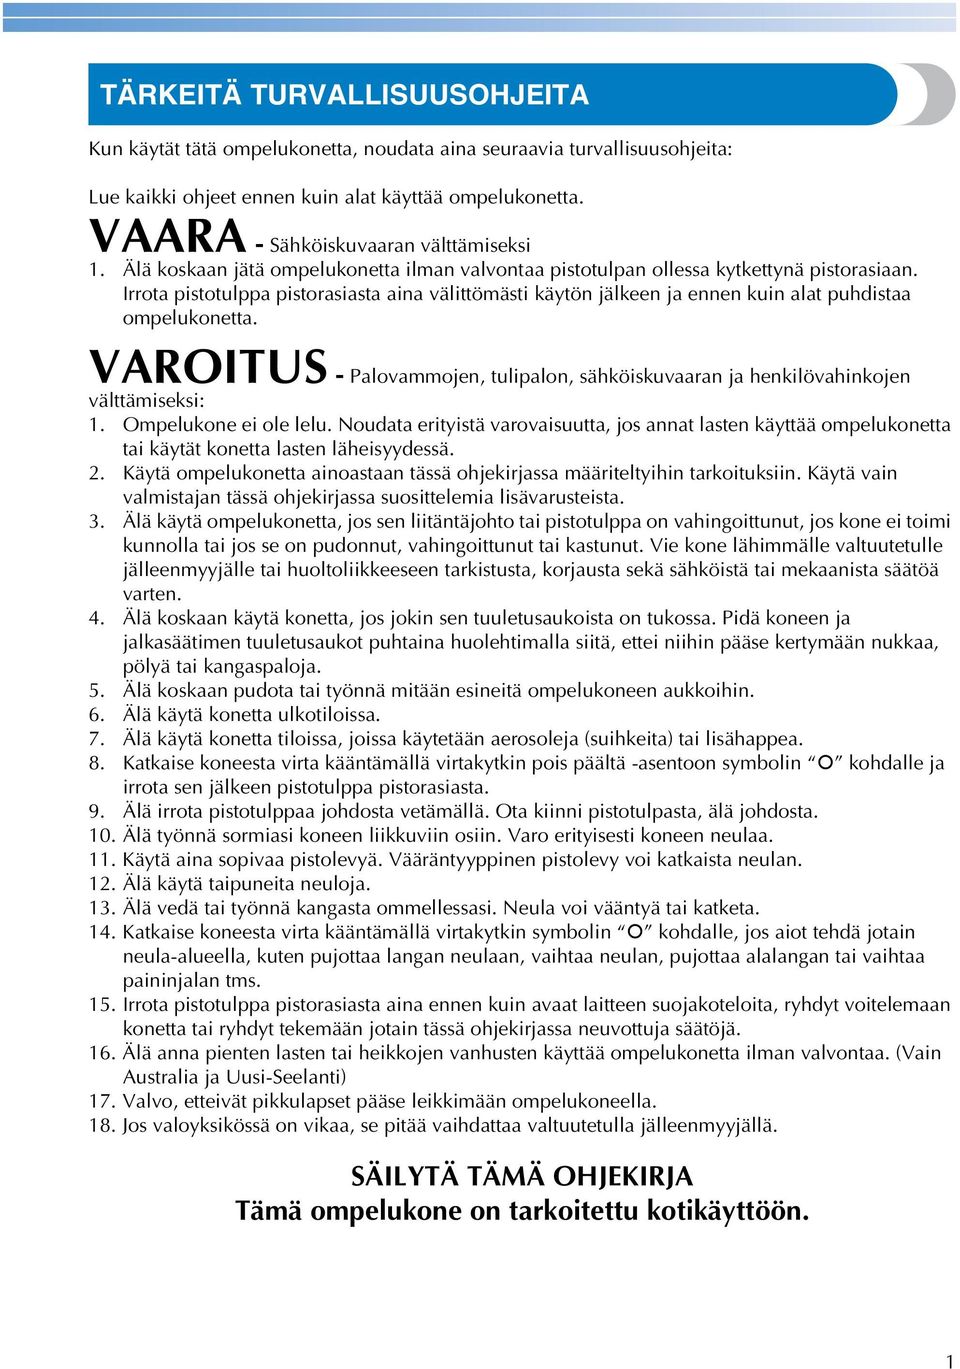 VAROITUS - Plovmmojen, tuliplon, sähköiskuvrn j henkilövhinkojen välttämiseksi:. Ompelukone ei ole lelu.